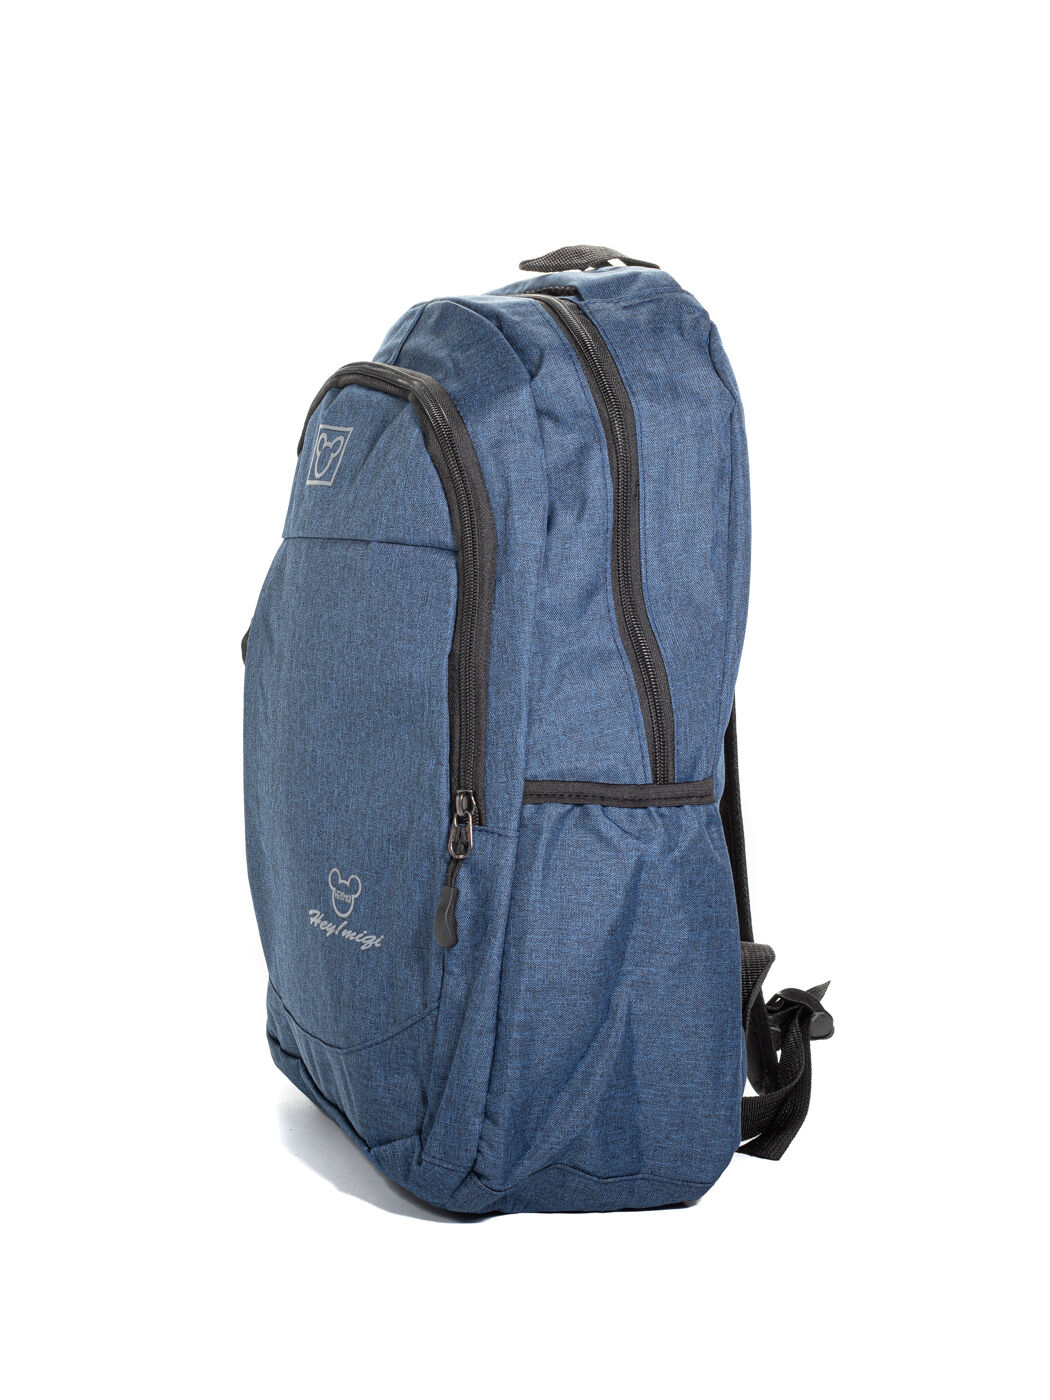 Рюкзак текстиль синий-M вид 0